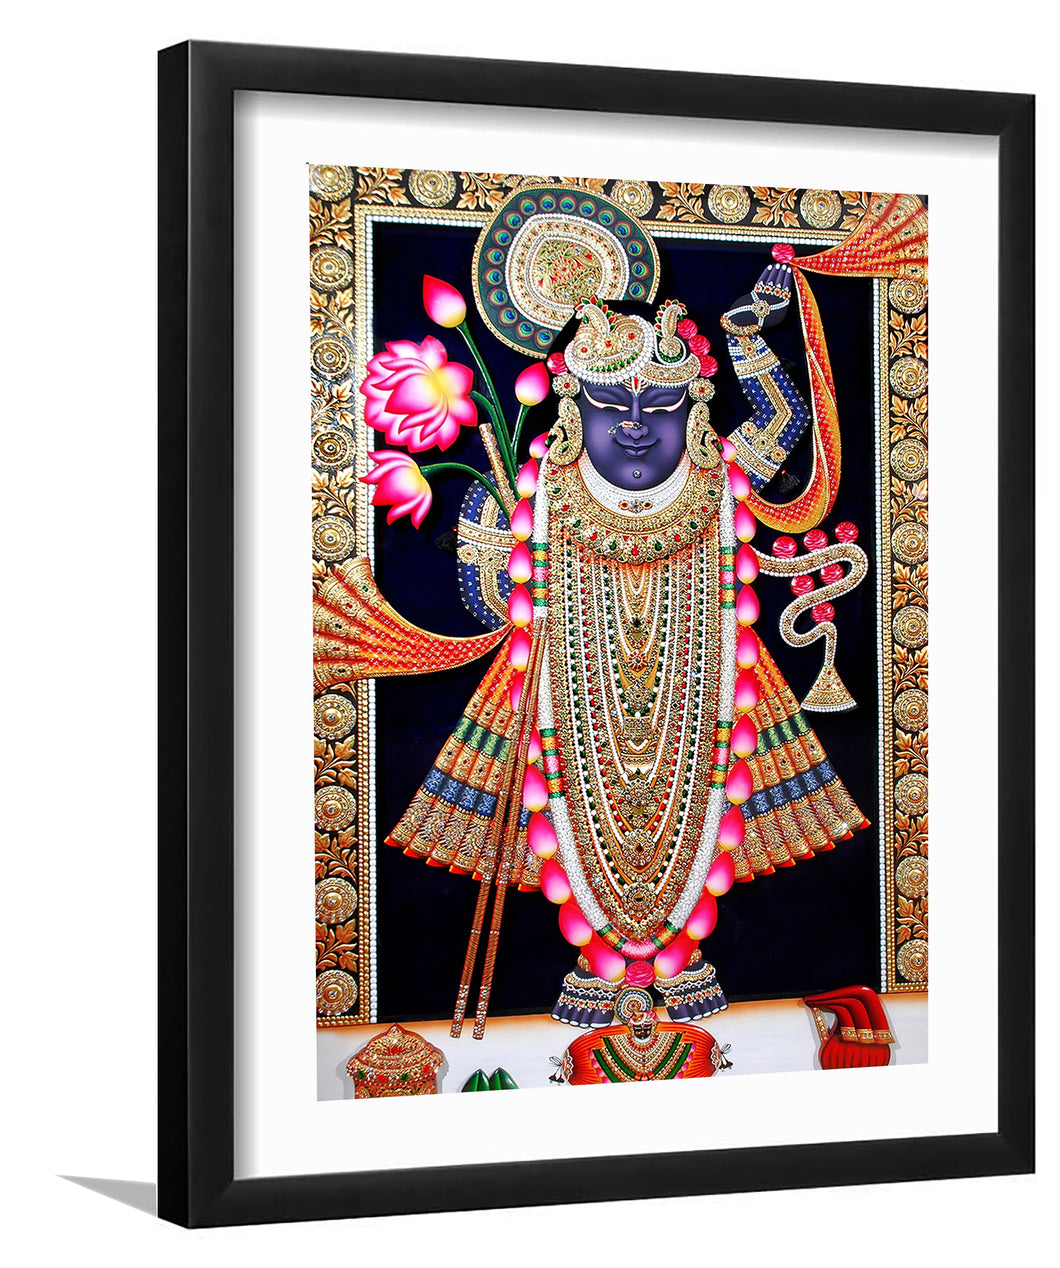 Lord Shreenathji - Framed Prints, Painting Art, Art Print, Framed Art, Black Frame